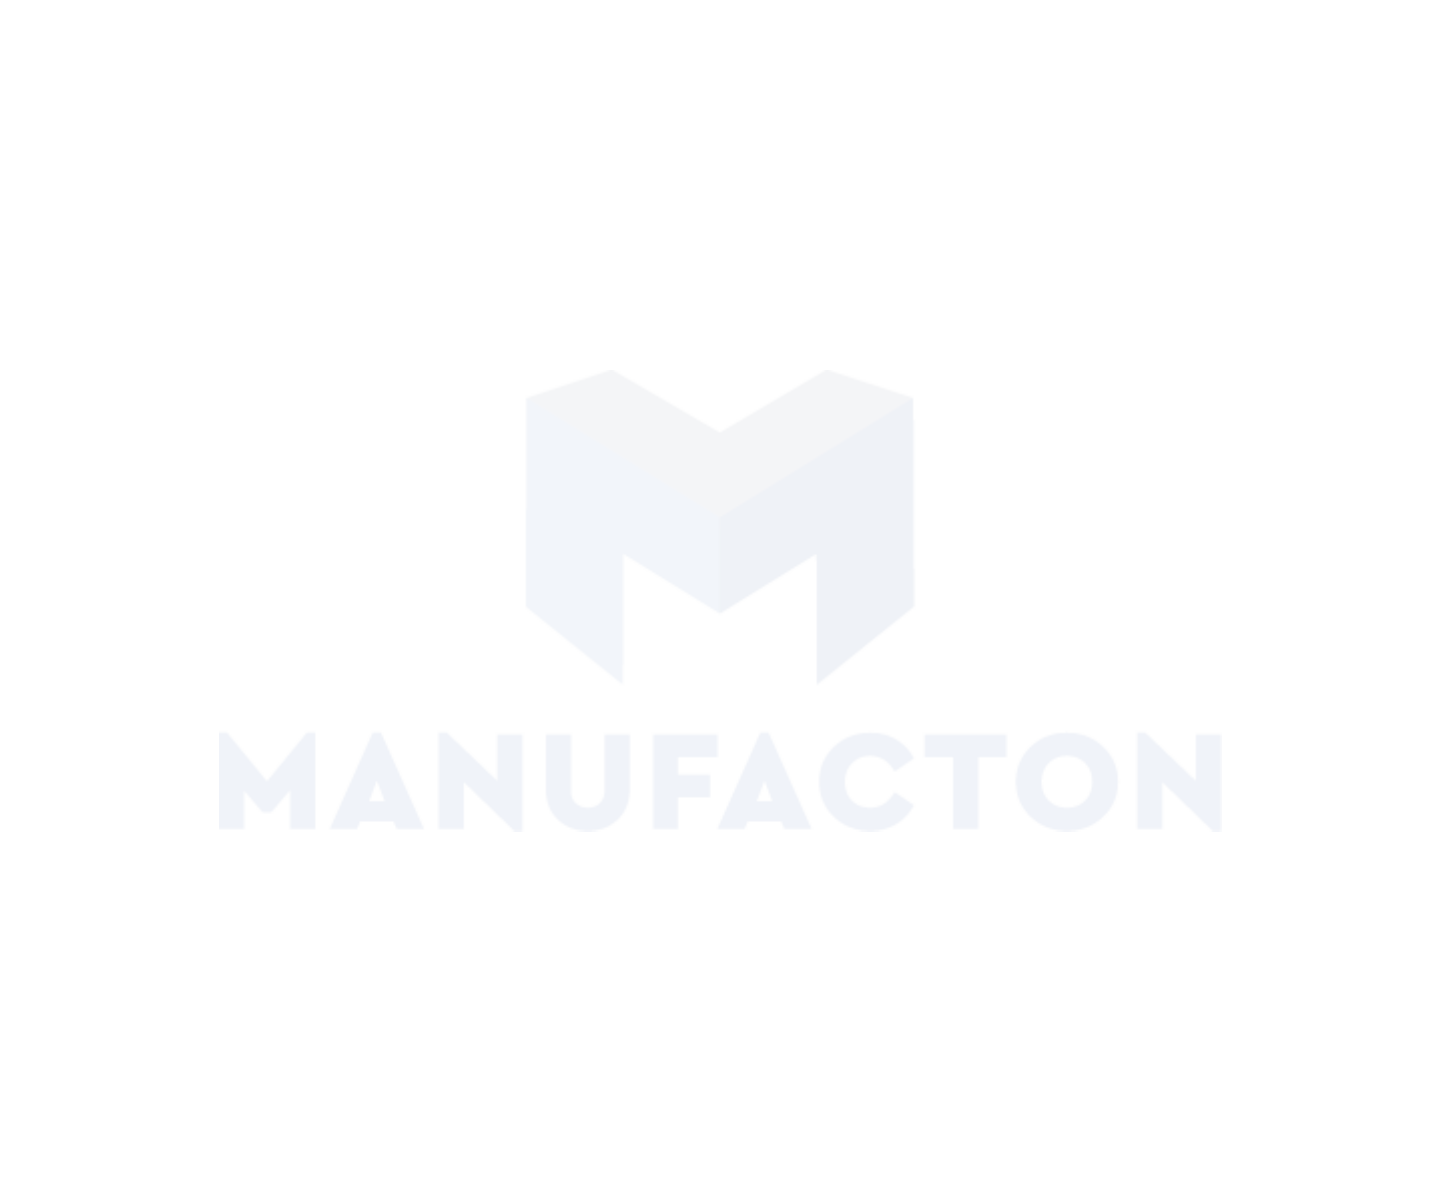 Manufacton